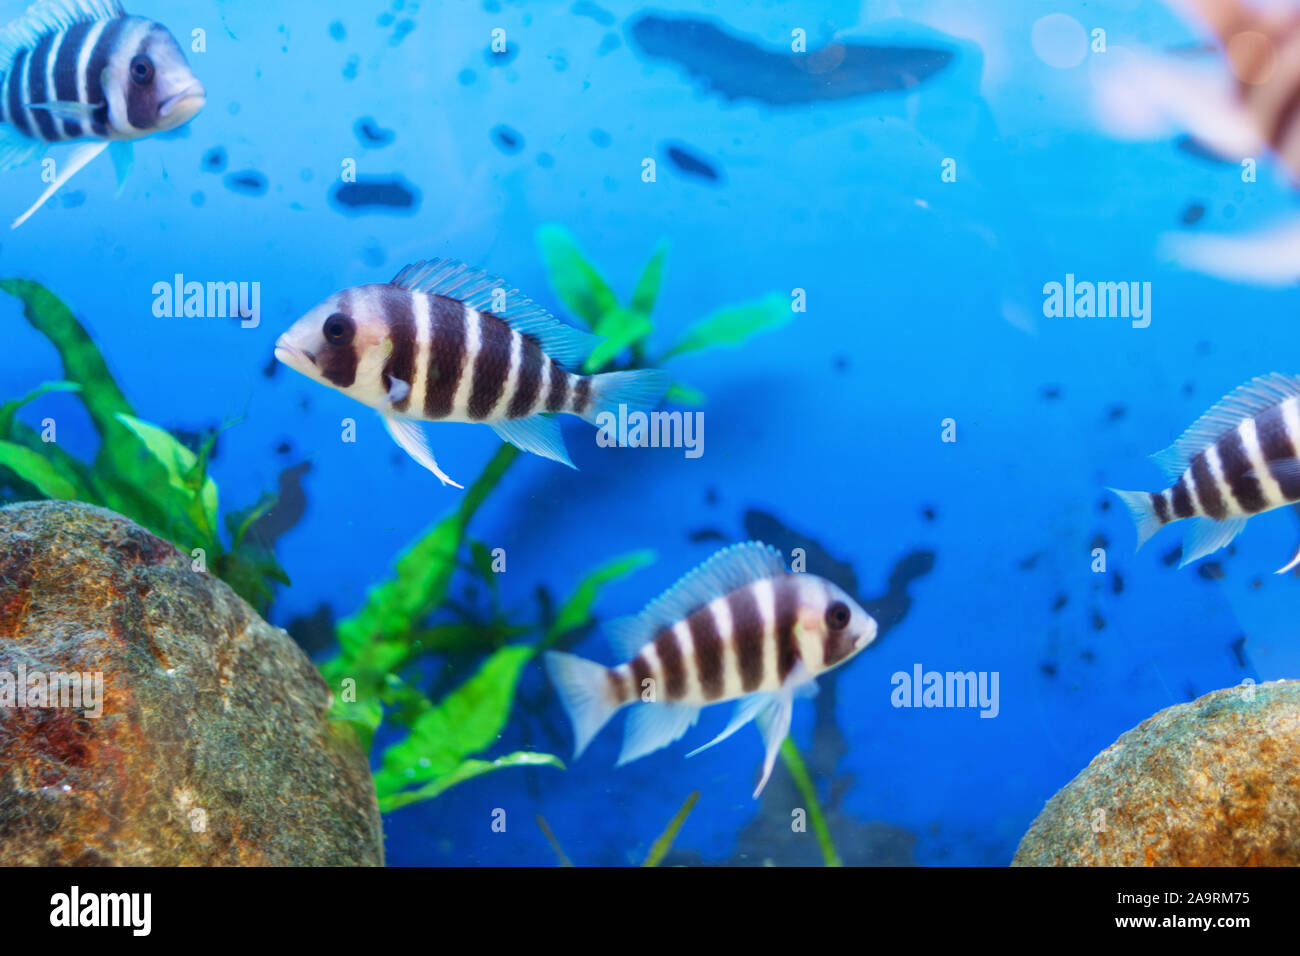 Hermoso mundo submarino con peces tropicales. Los peces nadando en el agua azul claro con burbujas de aire. Foto de stock